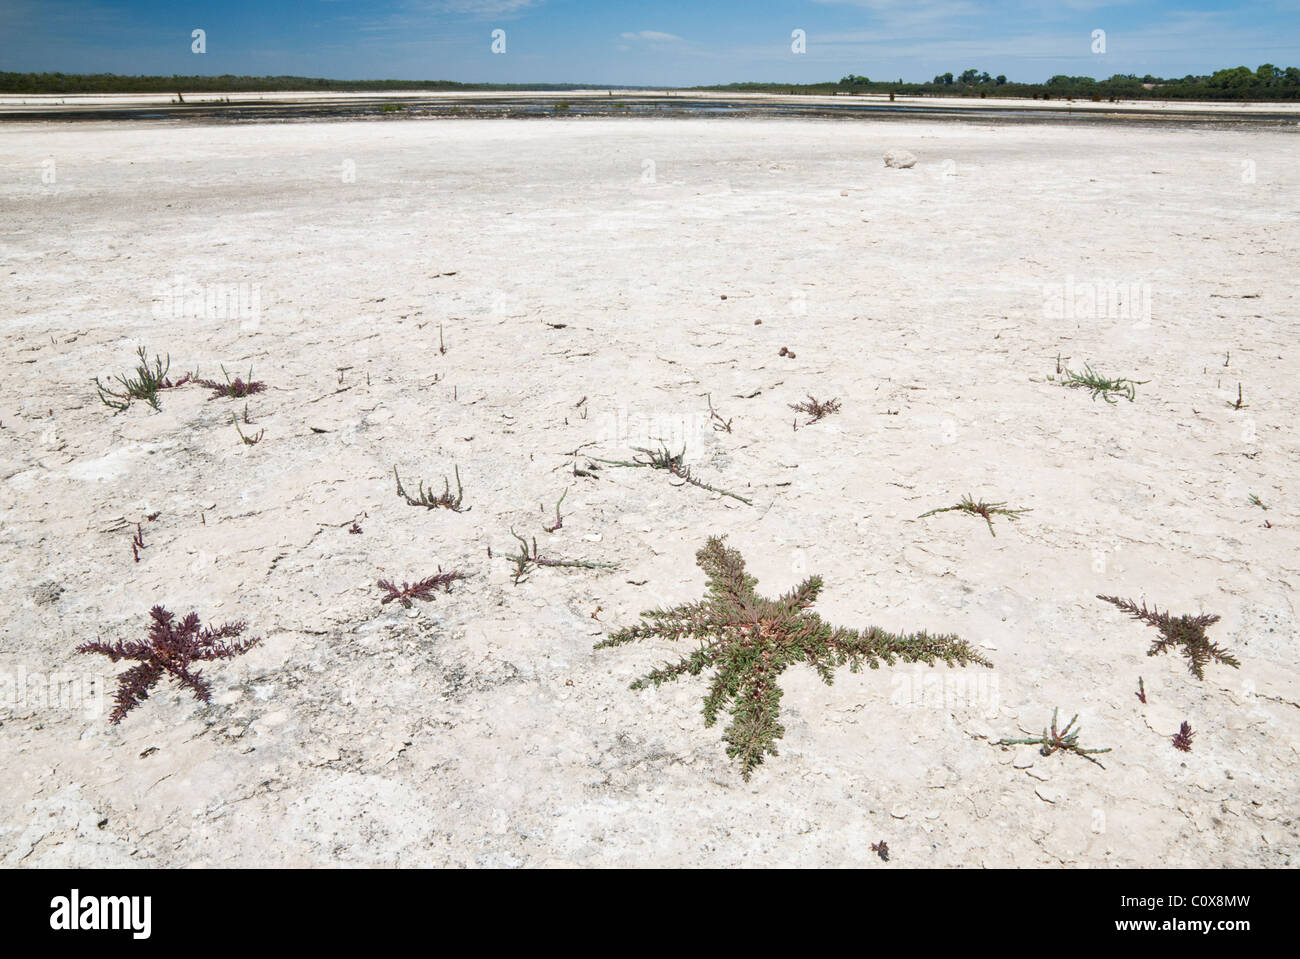 Suculentas tolerantes a la sal crecen en el lecho seco del lago Preston, Australia Occidental Foto de stock